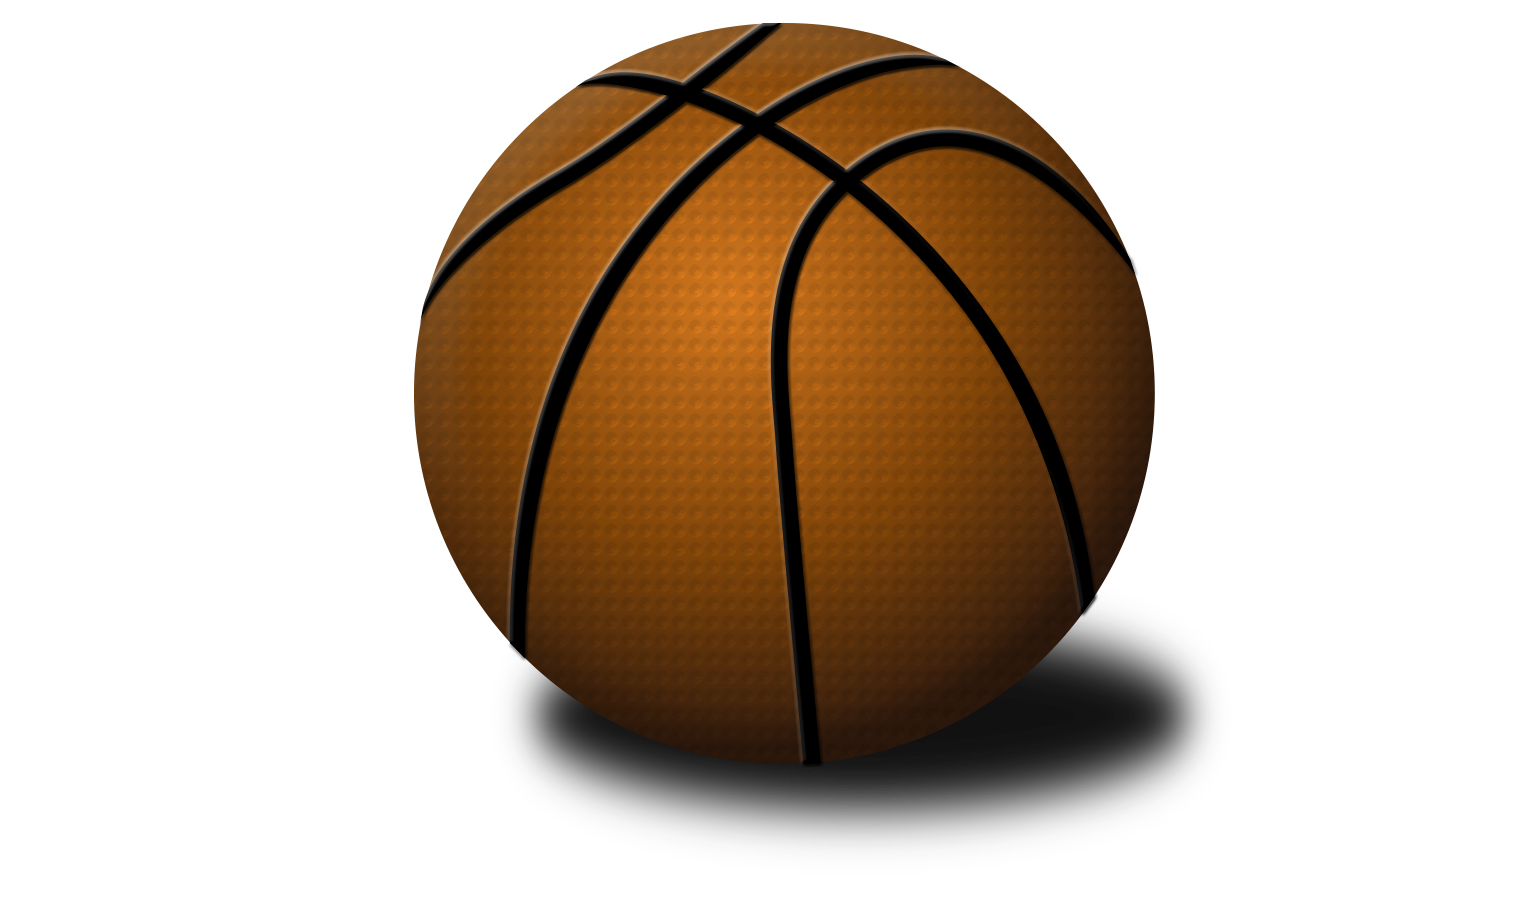 Fond de limage PNG de basketball